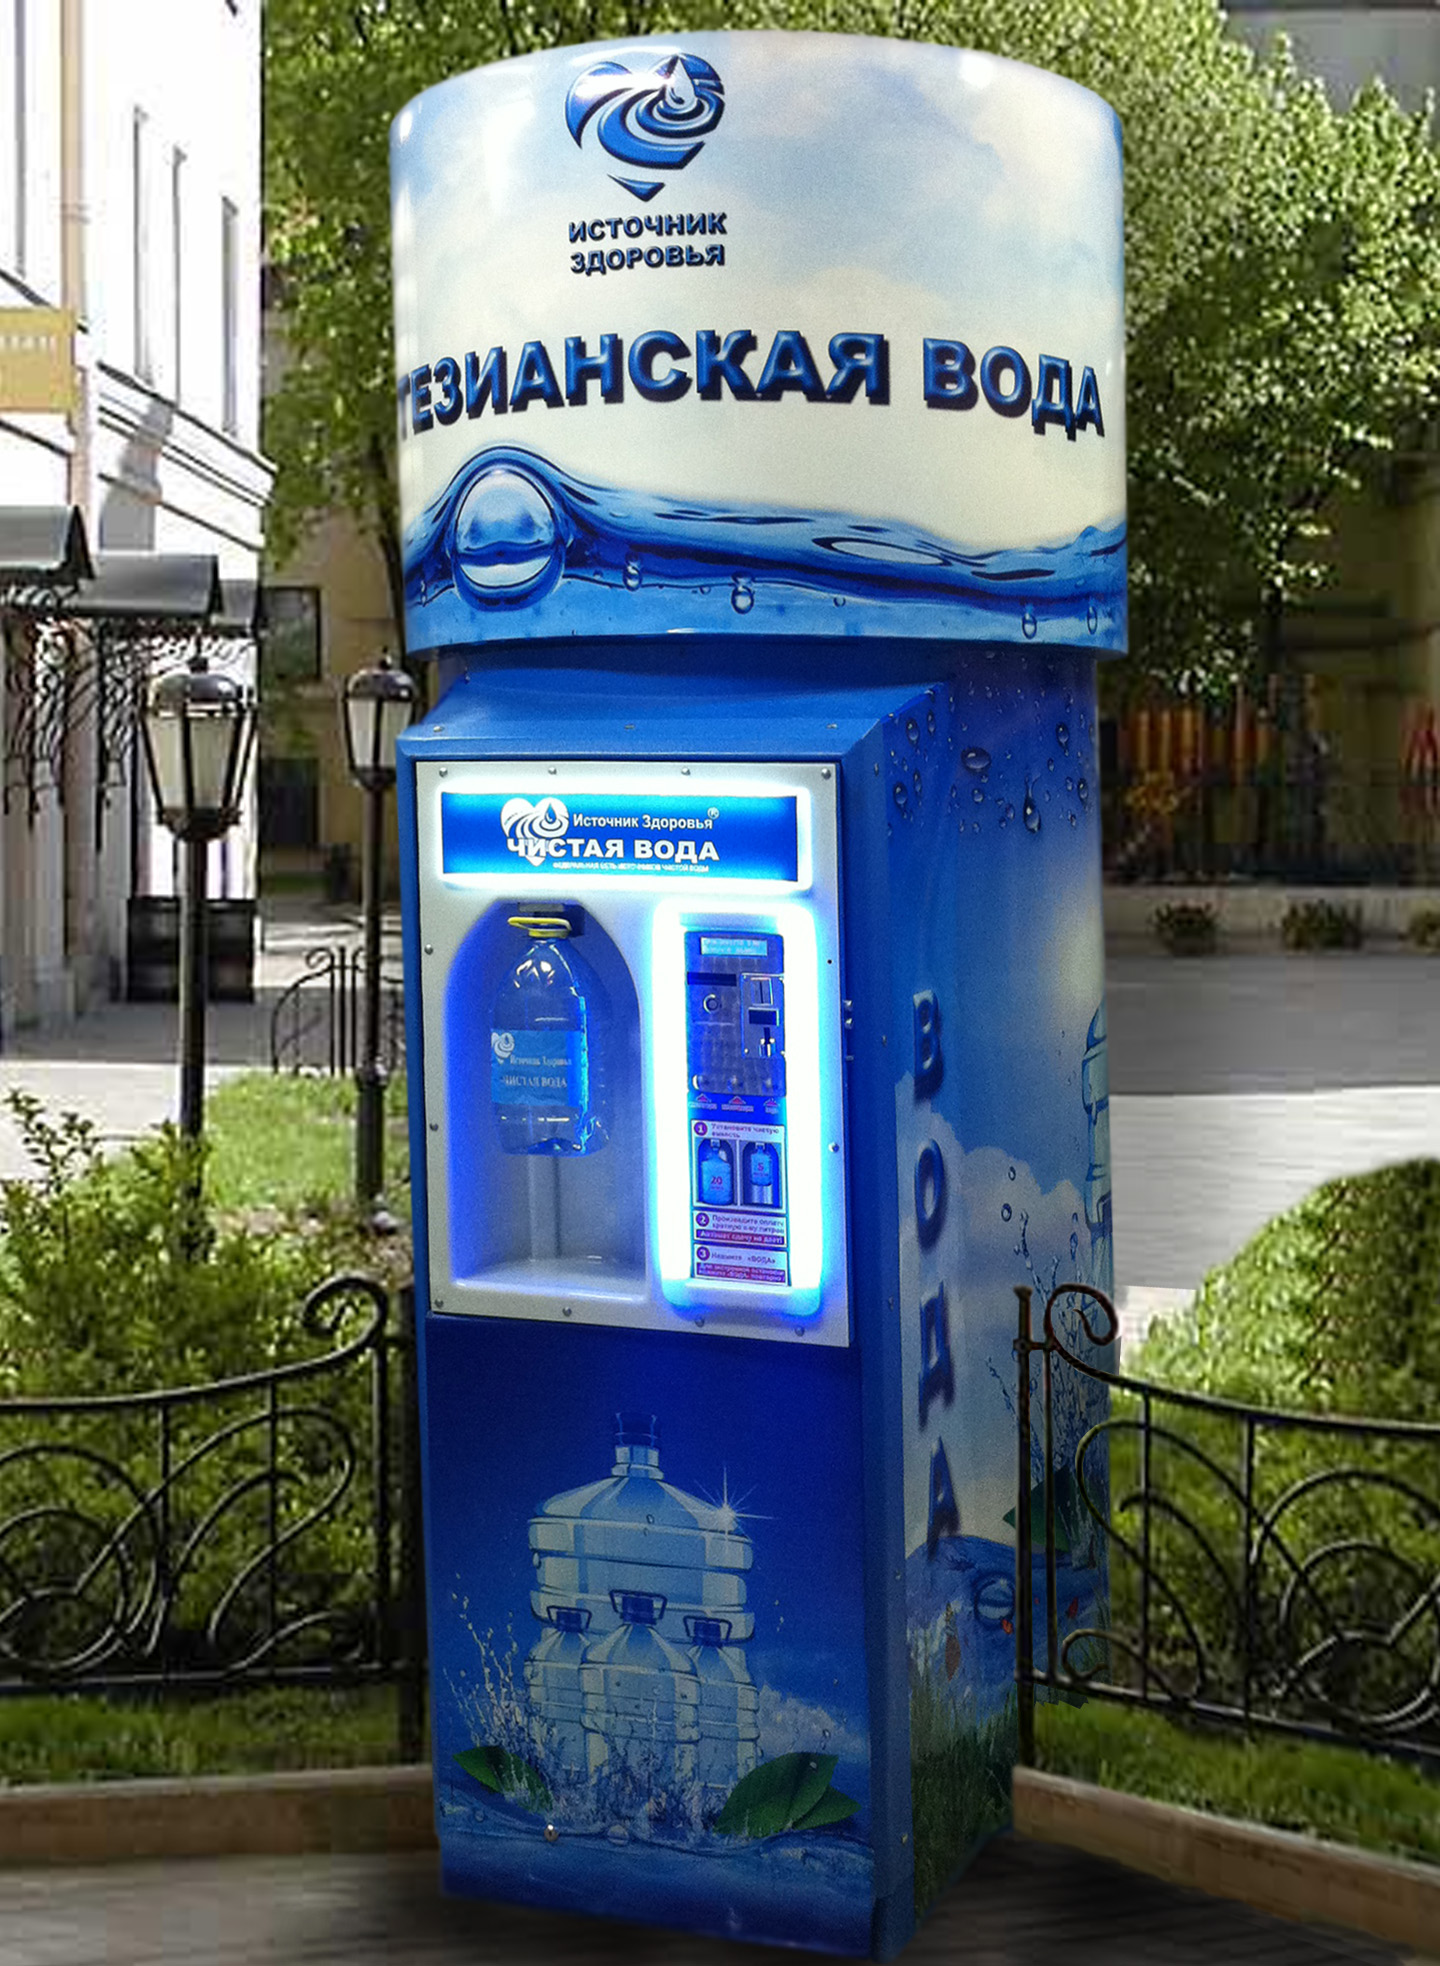 Аппарат продажи воды на улице. Автомат с водой. Аппарат для воды. Автомат для розлива воды. Аппарат для розлива воды на улице.